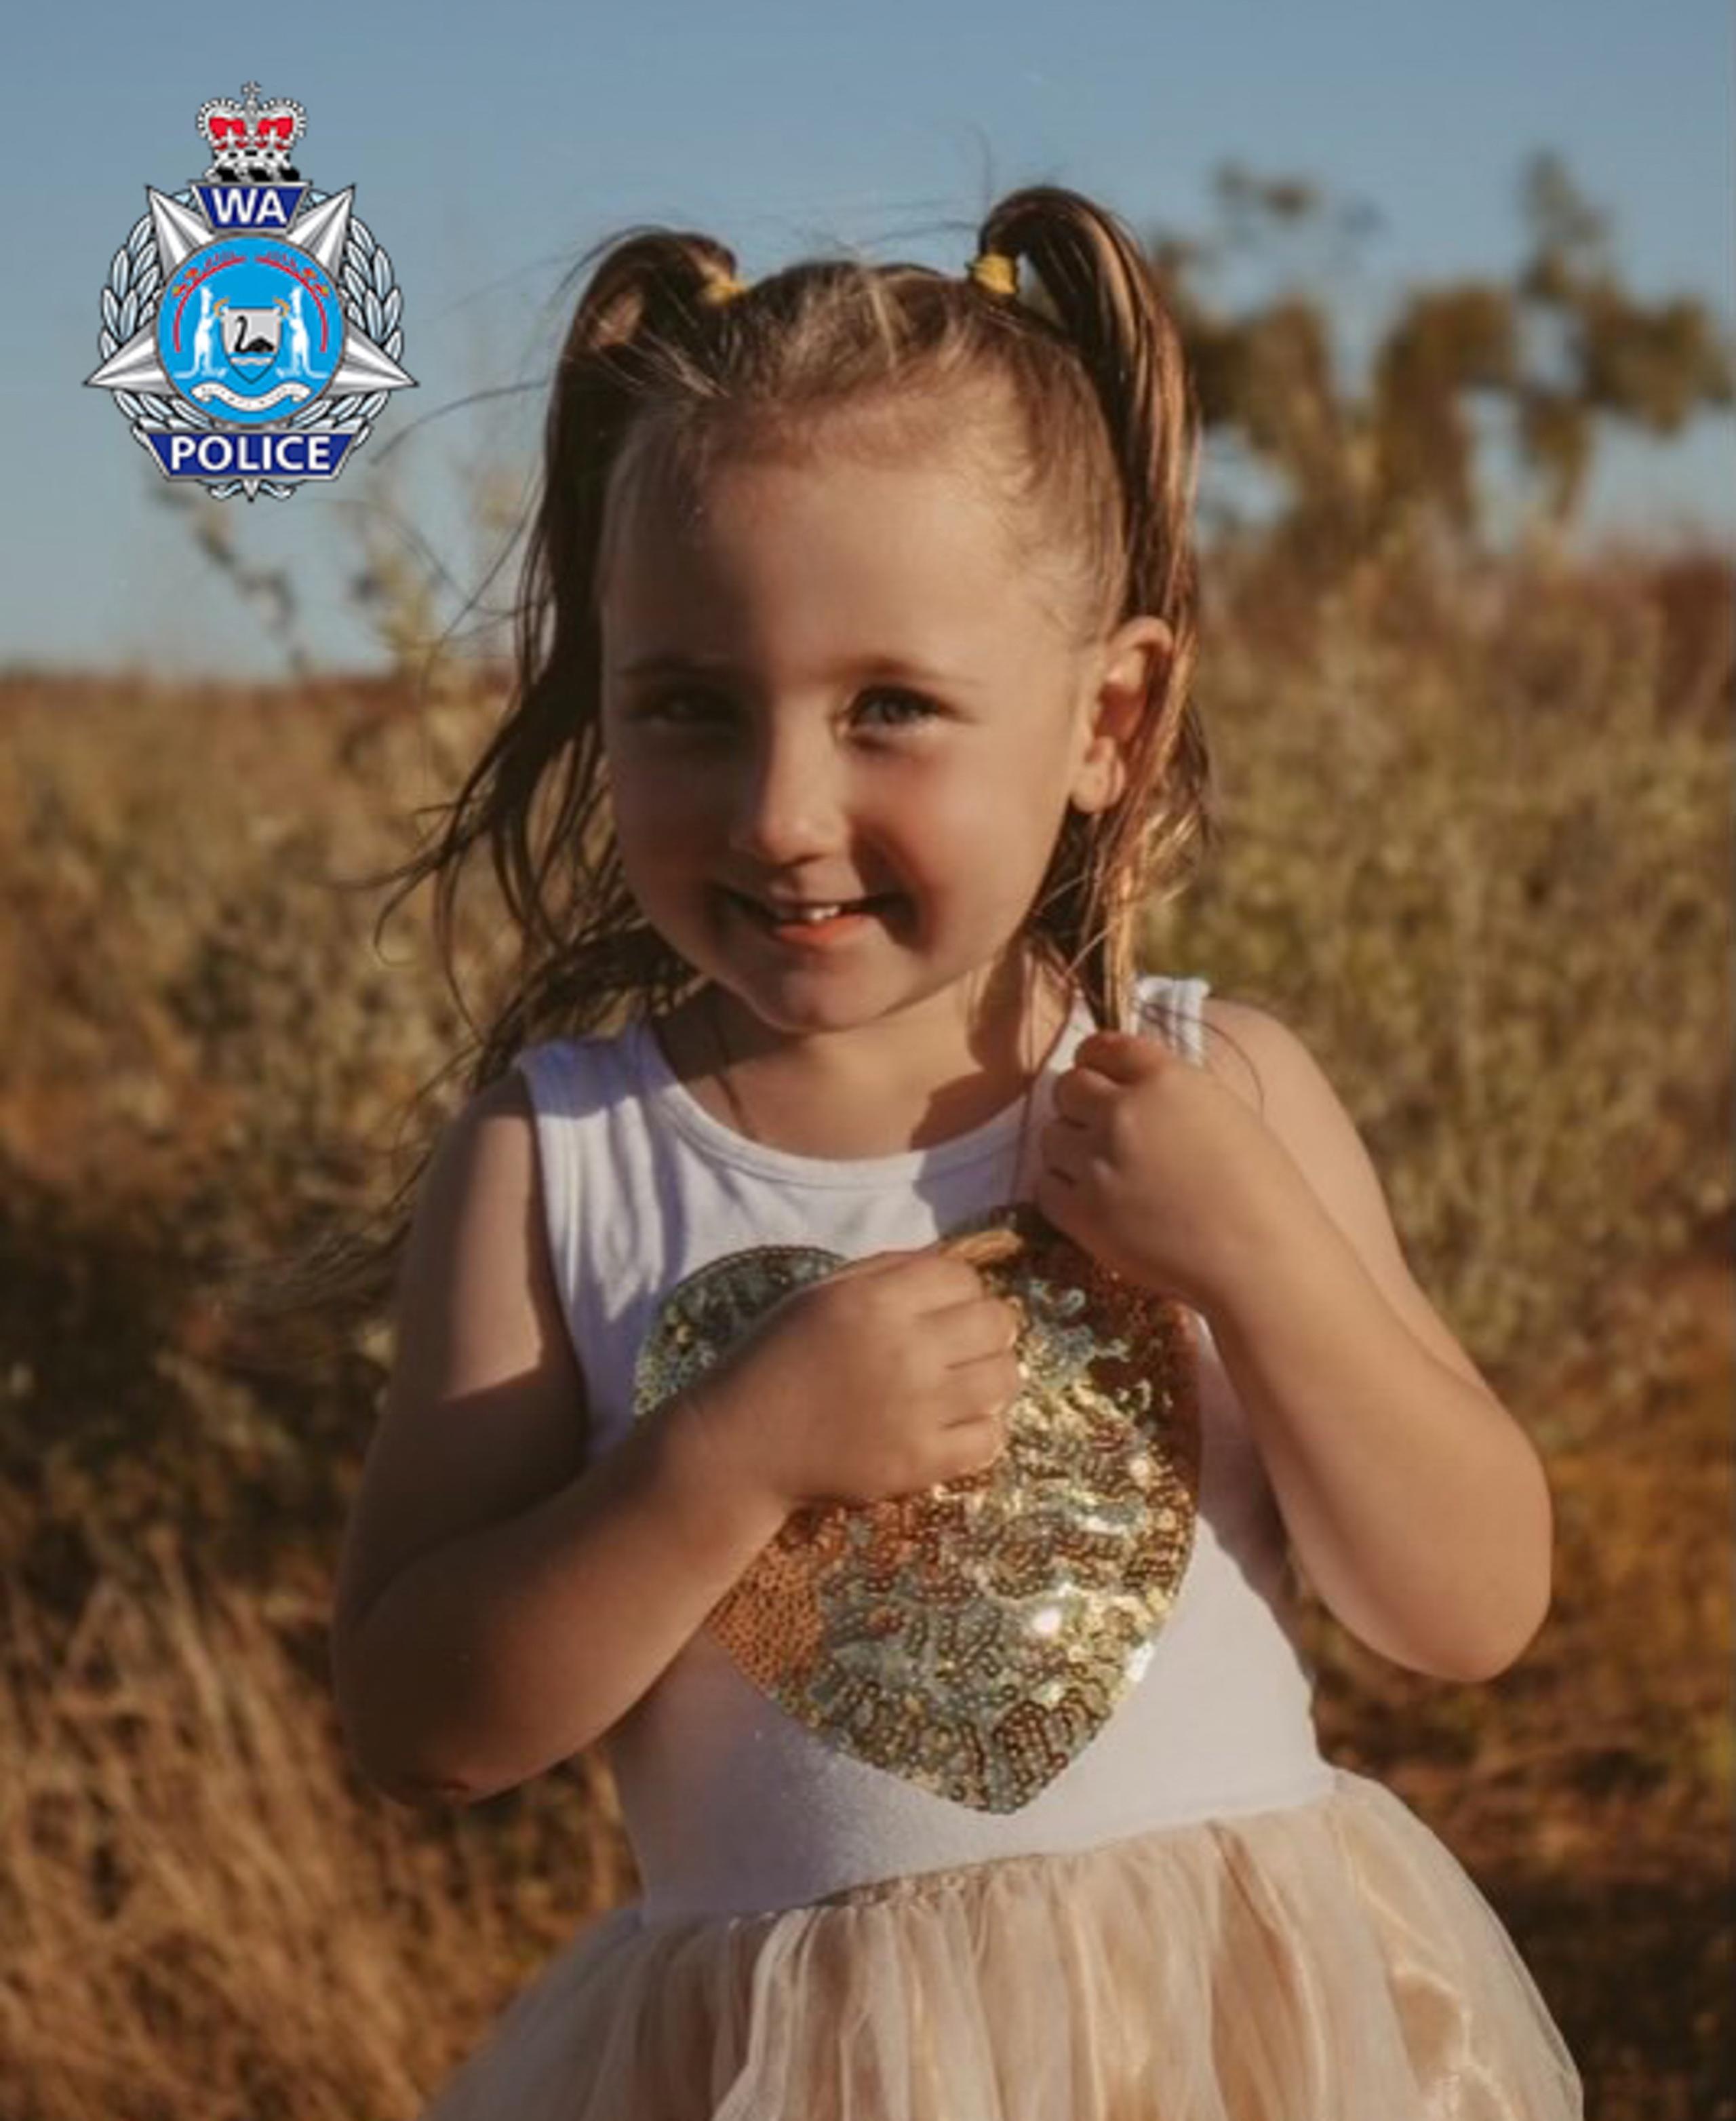 Imagen facilitada por la policía australiana de la niña Cleo Smith.